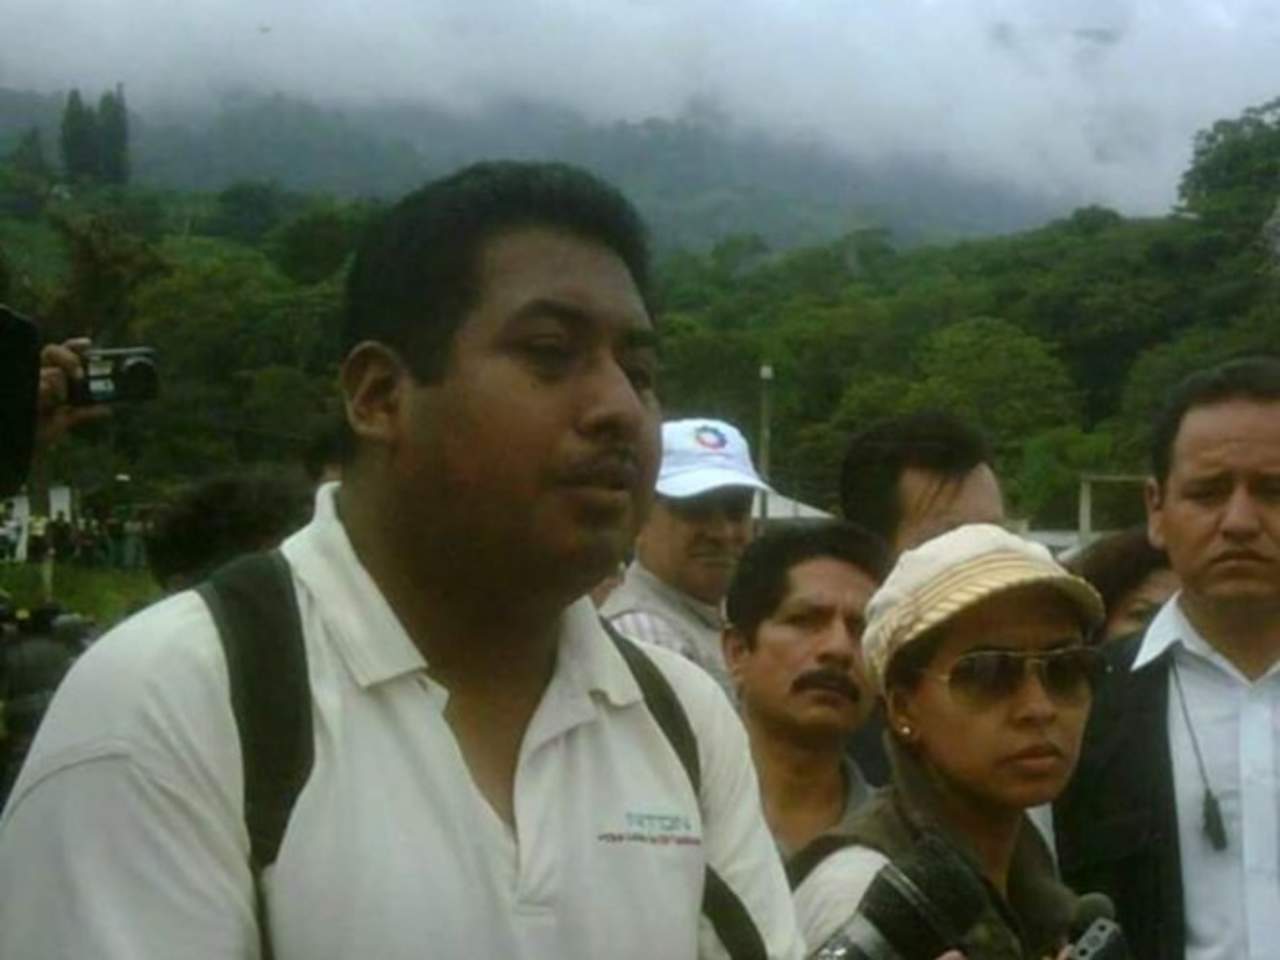 El Comité para la Protección de los Periodistas (CPJ, por sus siglas en inglés) instó a las autoridades mexicanas a investigar con prontitud y rigor el asesinato del periodista Mario Leonel Gómez Sánchez, que ocurrió el 21 de septiembre pasado en el estado de Chiapas. (TWITTER)